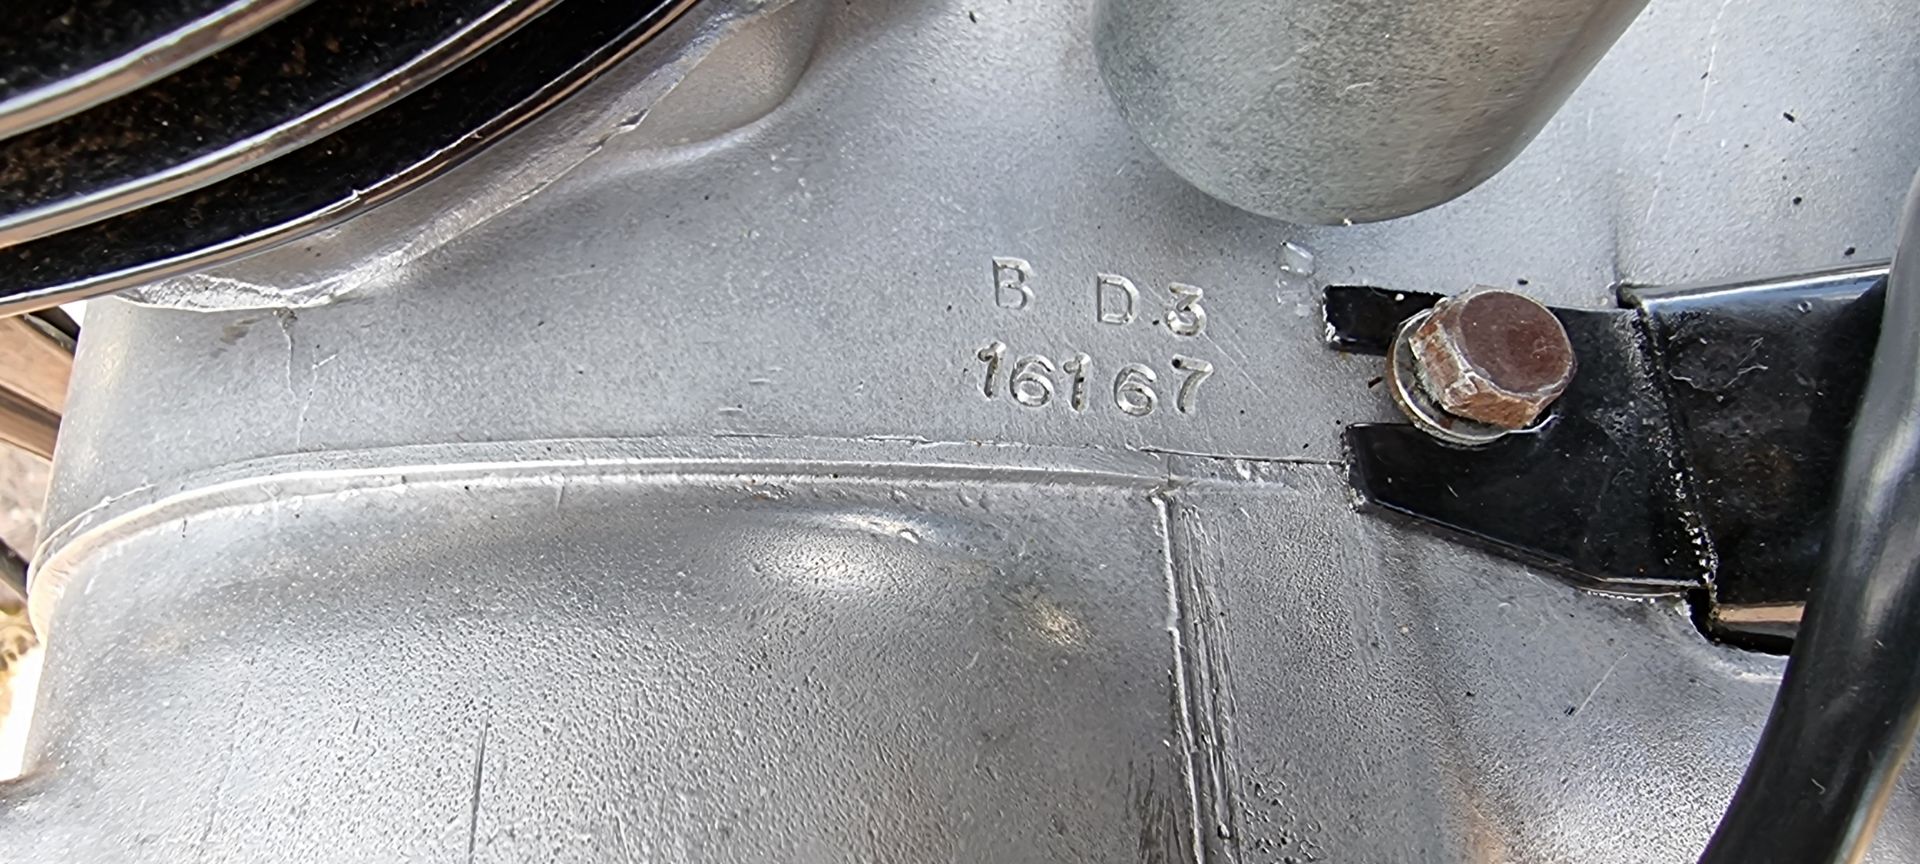 1957 BSA Bantam D3, 150cc. Registration number JAS 422 (non transferable). Frame number CD3 18485. - Image 13 of 15